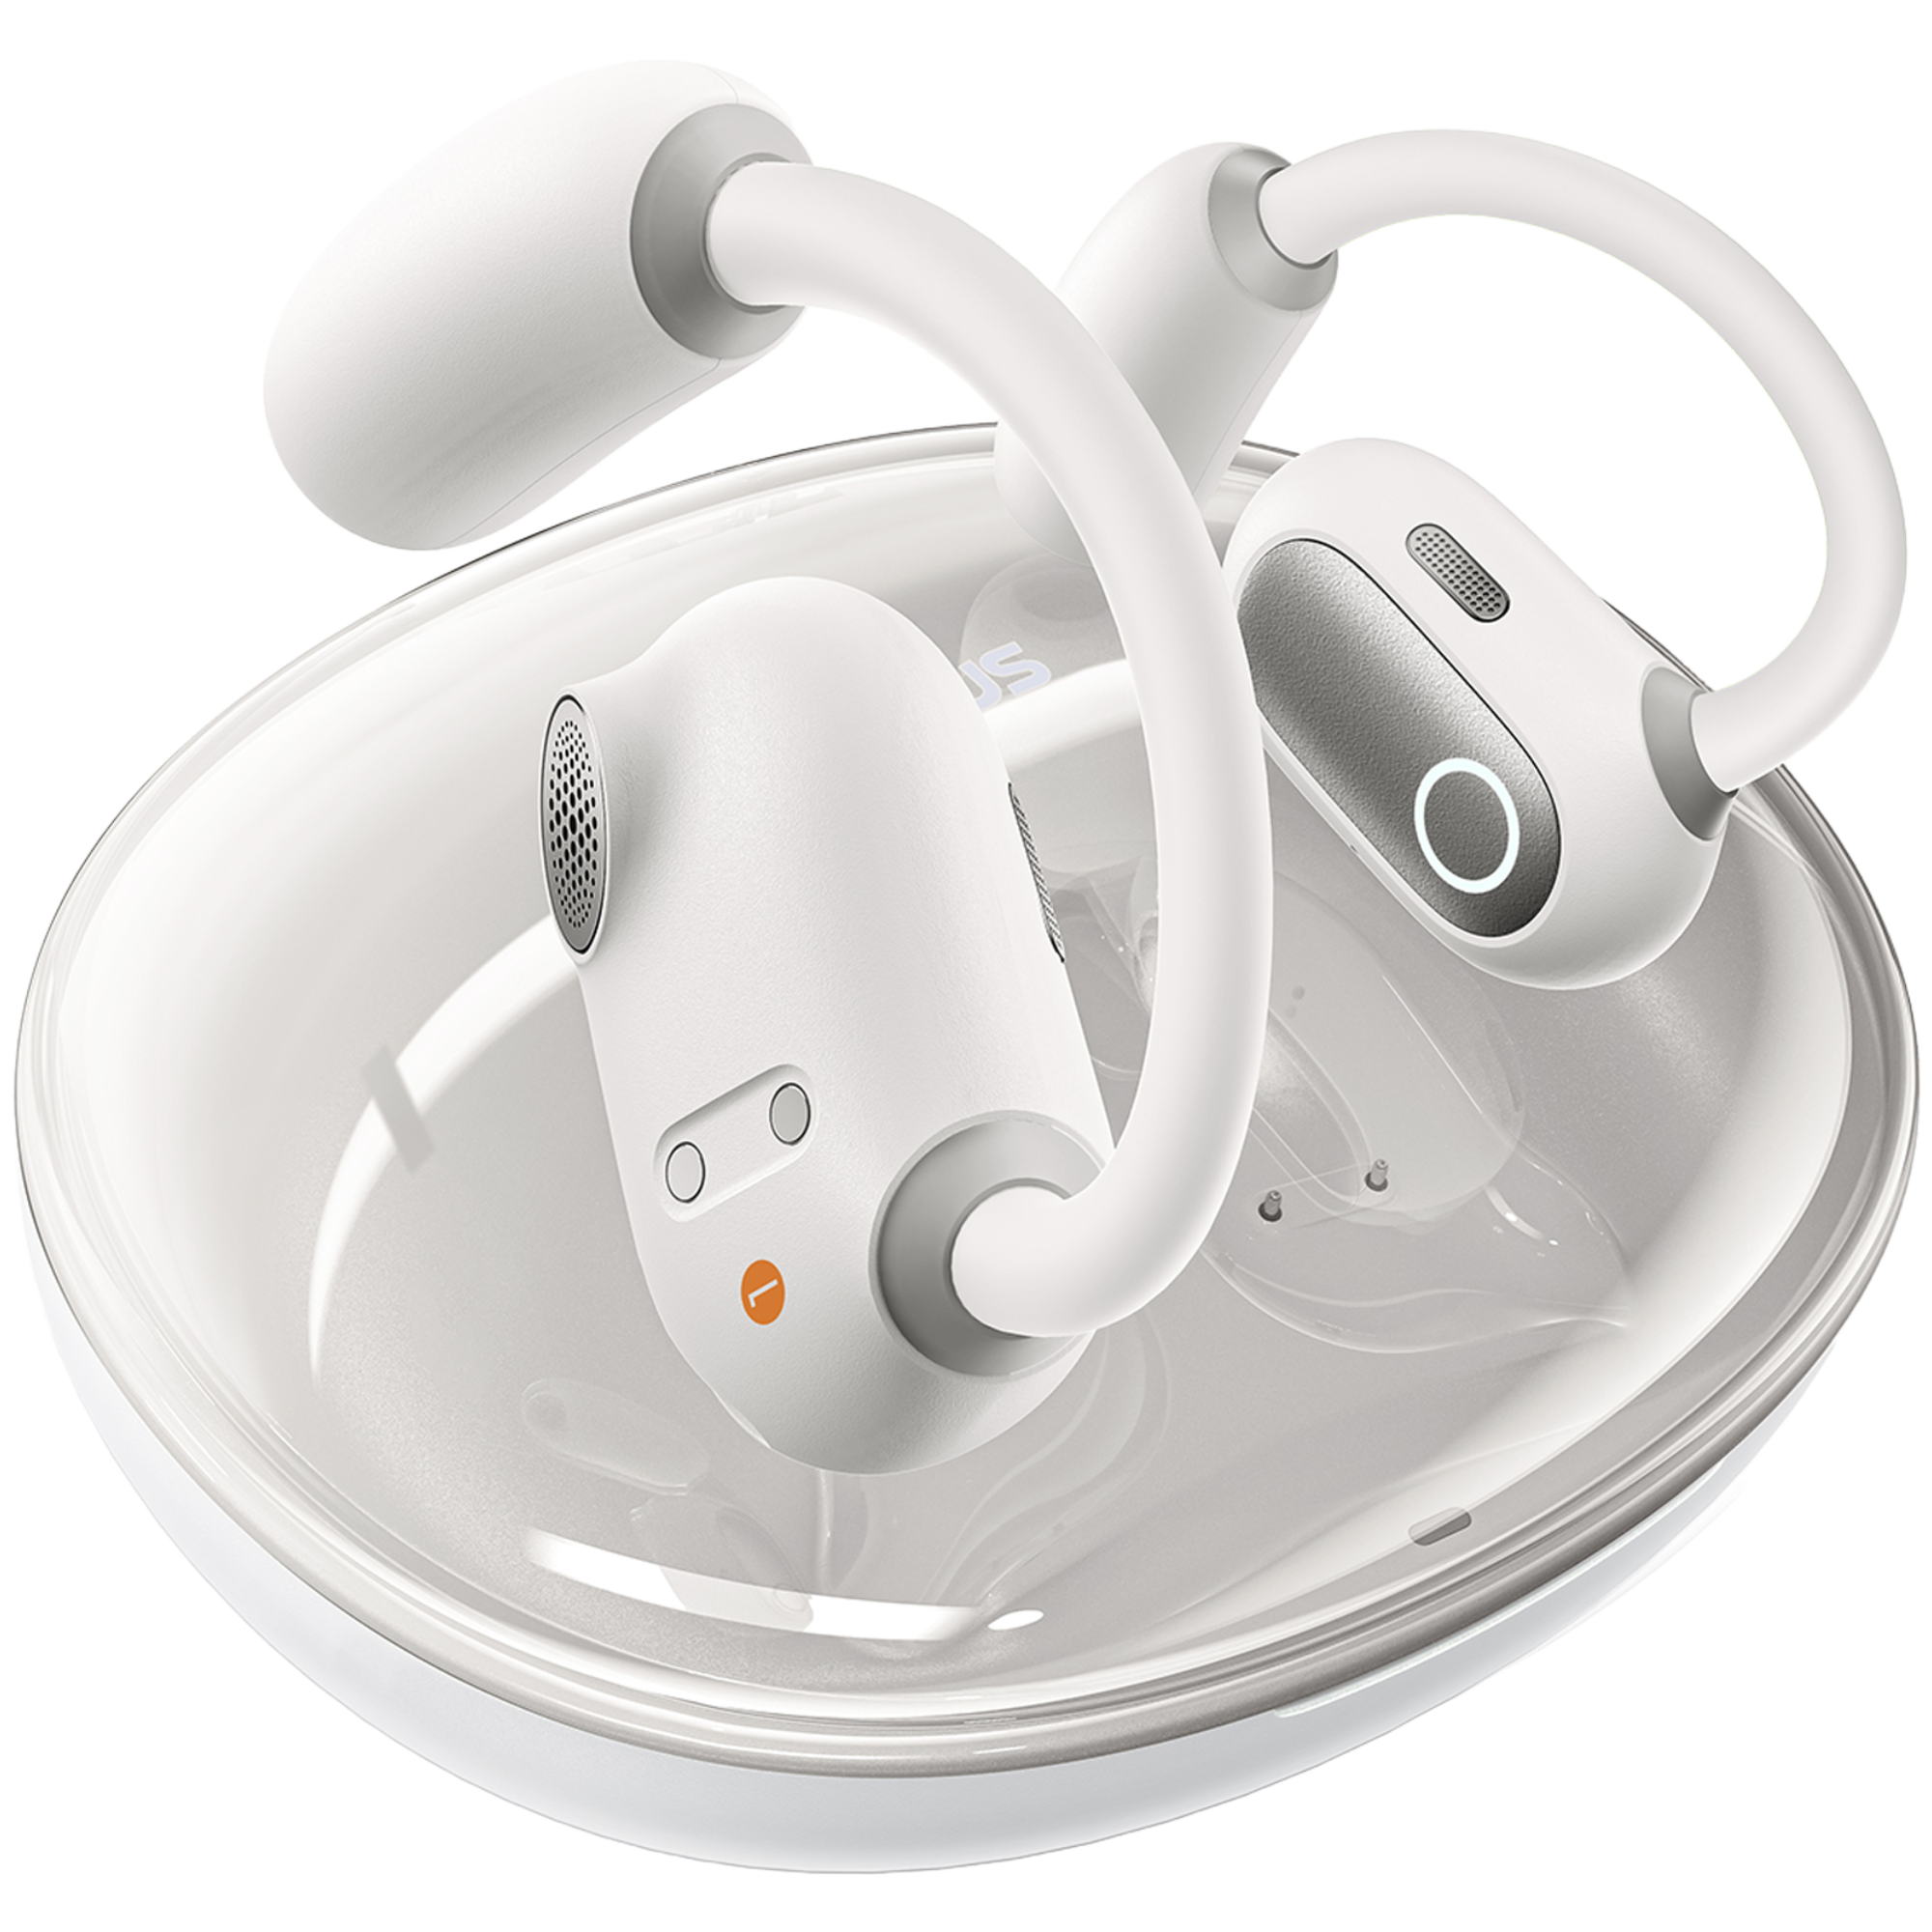  אוזניות ספורט אלחוטיות Baseus Eli Sport 1 open-ear TWS IPX4 - צבע לבן אחריות לשנה ע